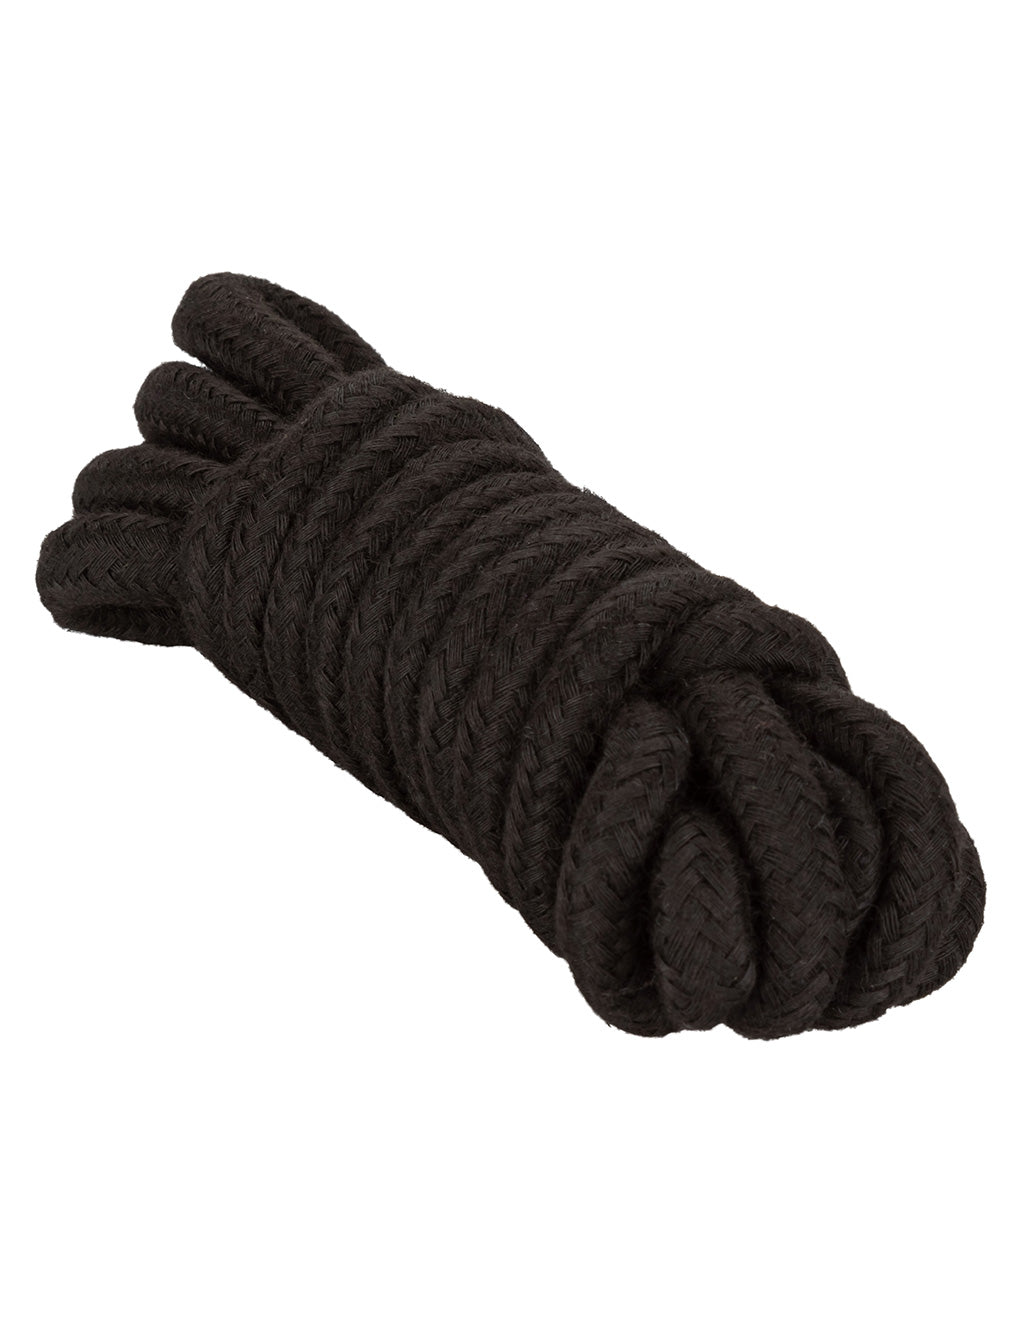 Hustler® Bondage Rope- Black- Laying down